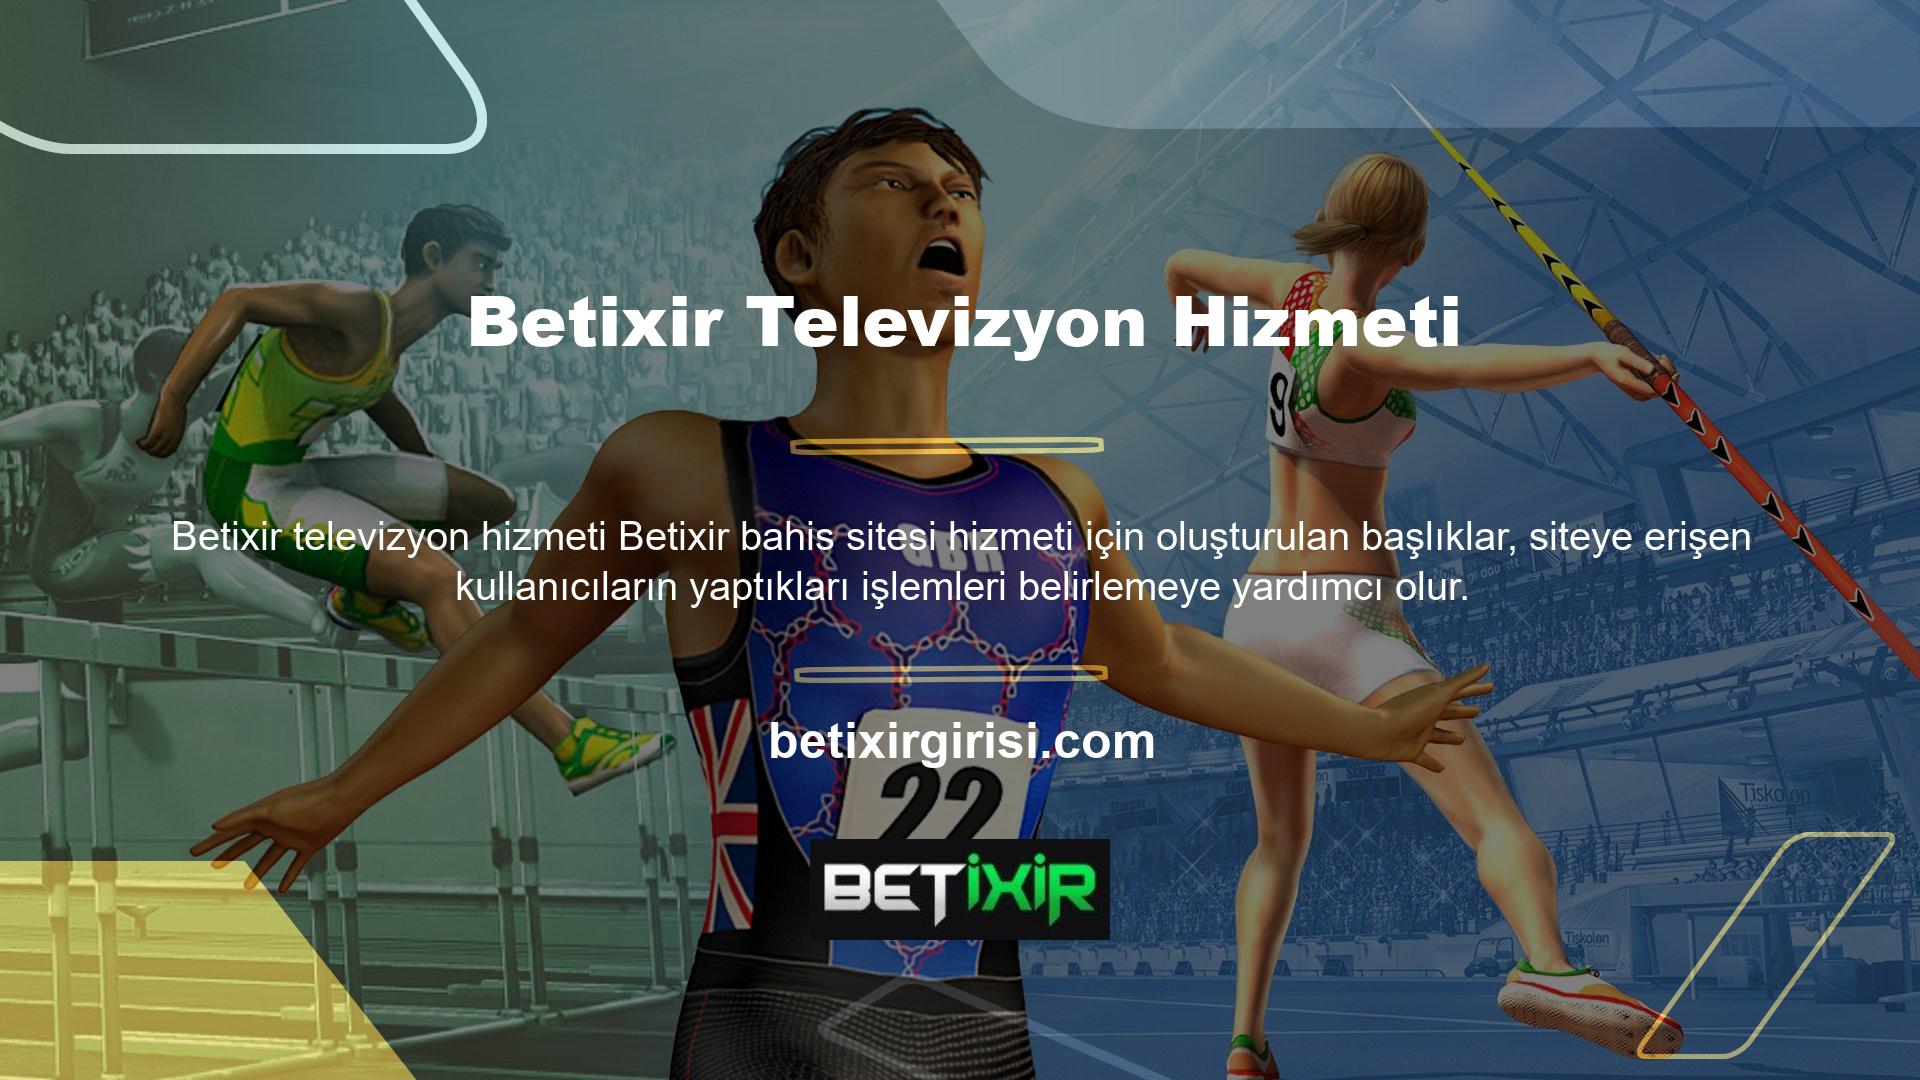 Betixir TV bölümleri görsel TV ikonları ile kullanıcılara sunulmaktadır